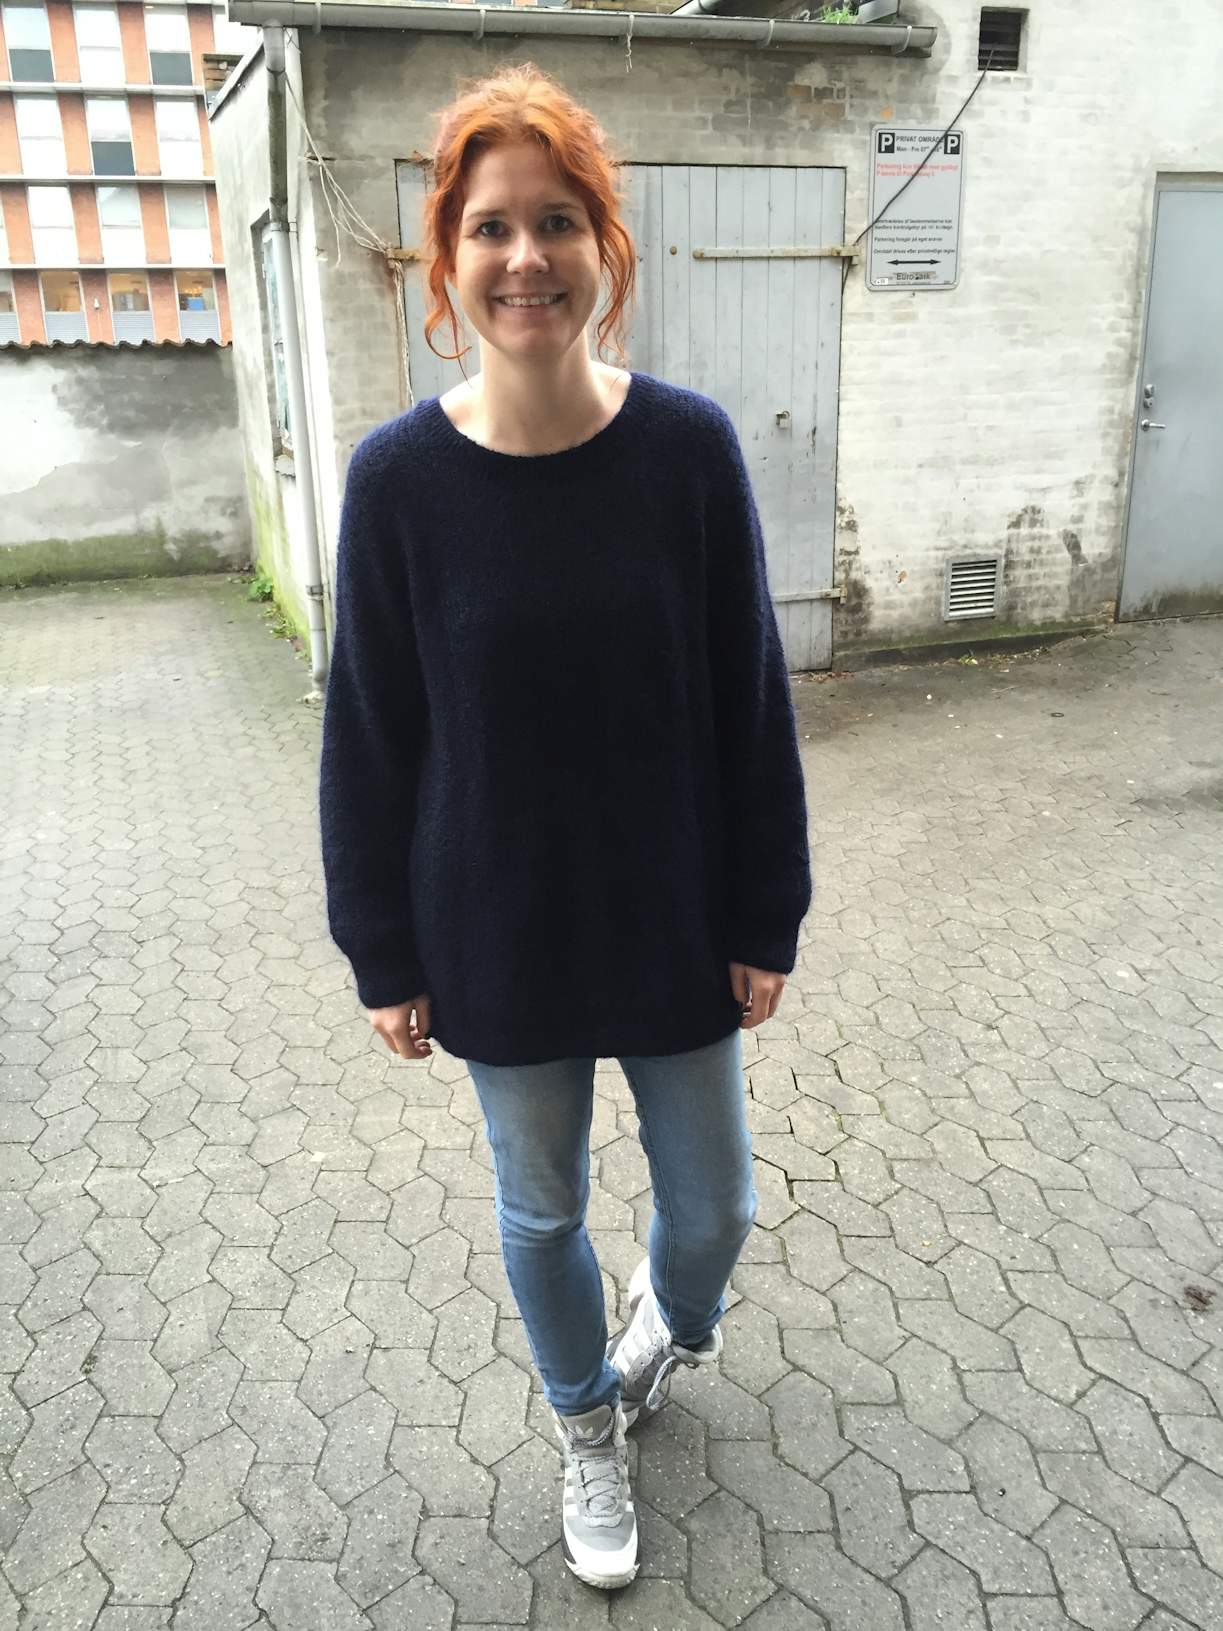 Woman tester: “Jeg gik i stramt tøj i en uge – ændrede syn på mig selv” | Woman.dk